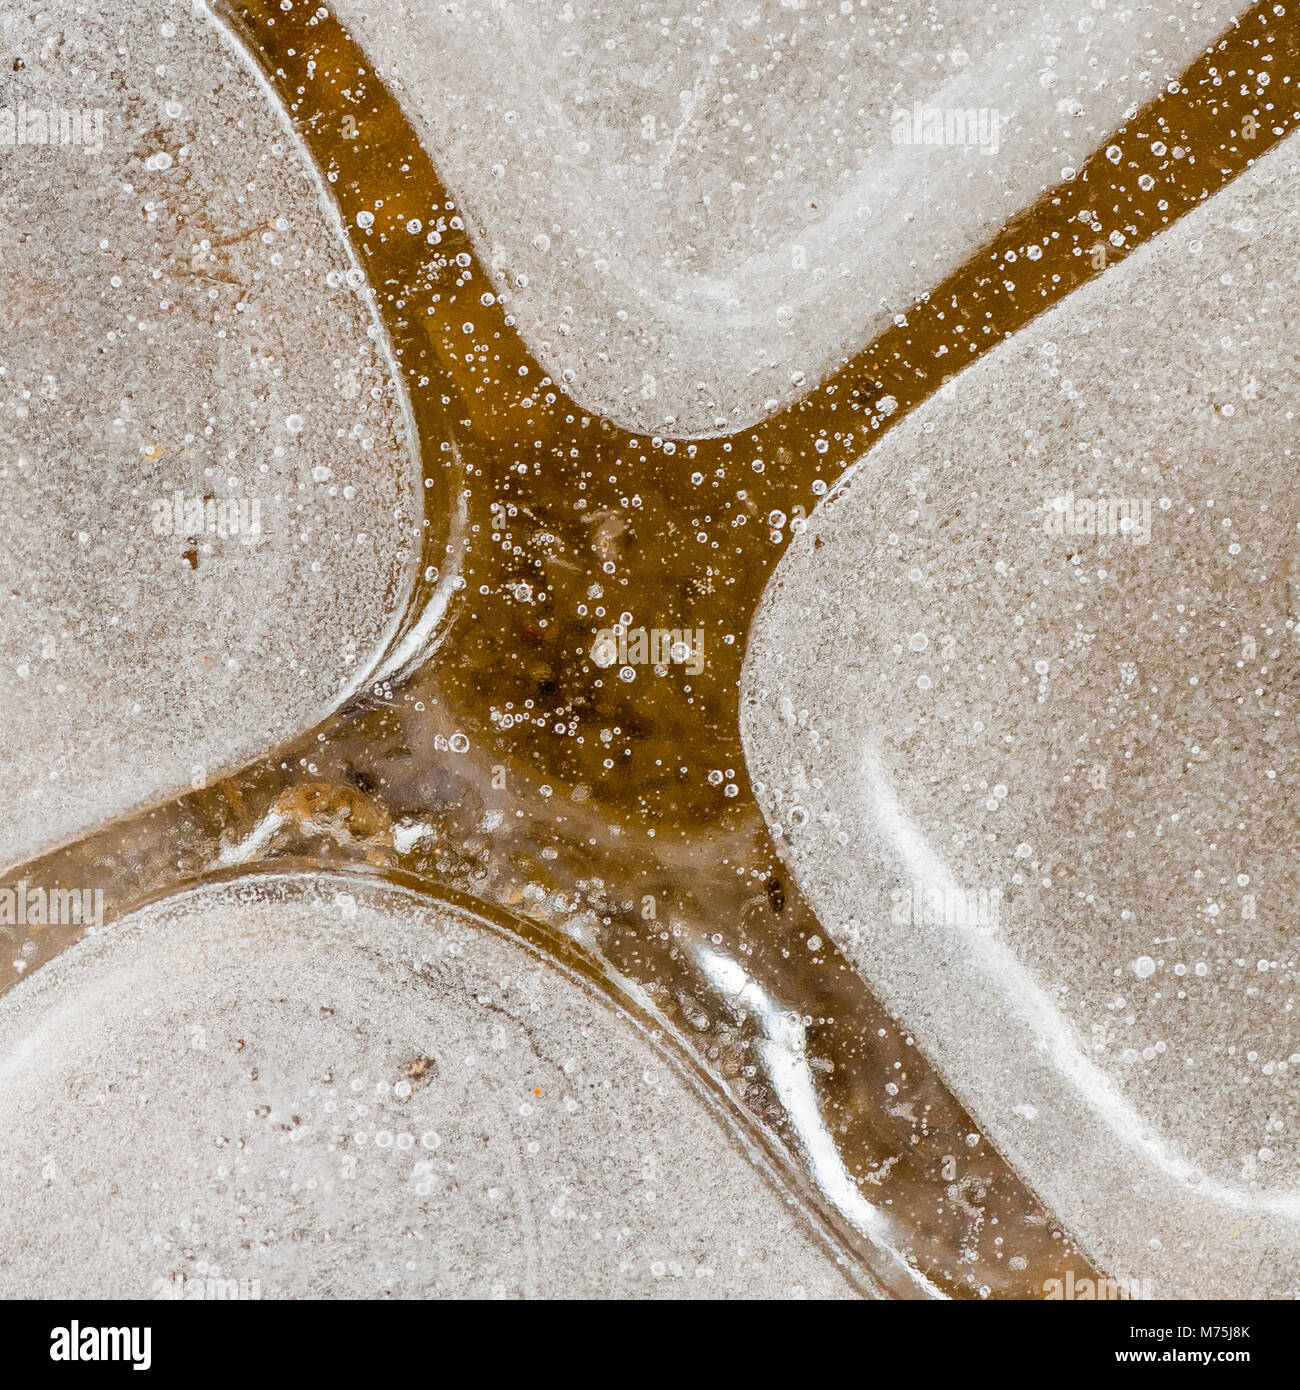 Platz Bild mit kreuzform gefrorenes Wasser Eis Oberfläche gleichmäßig aufgeteilt Stockfoto